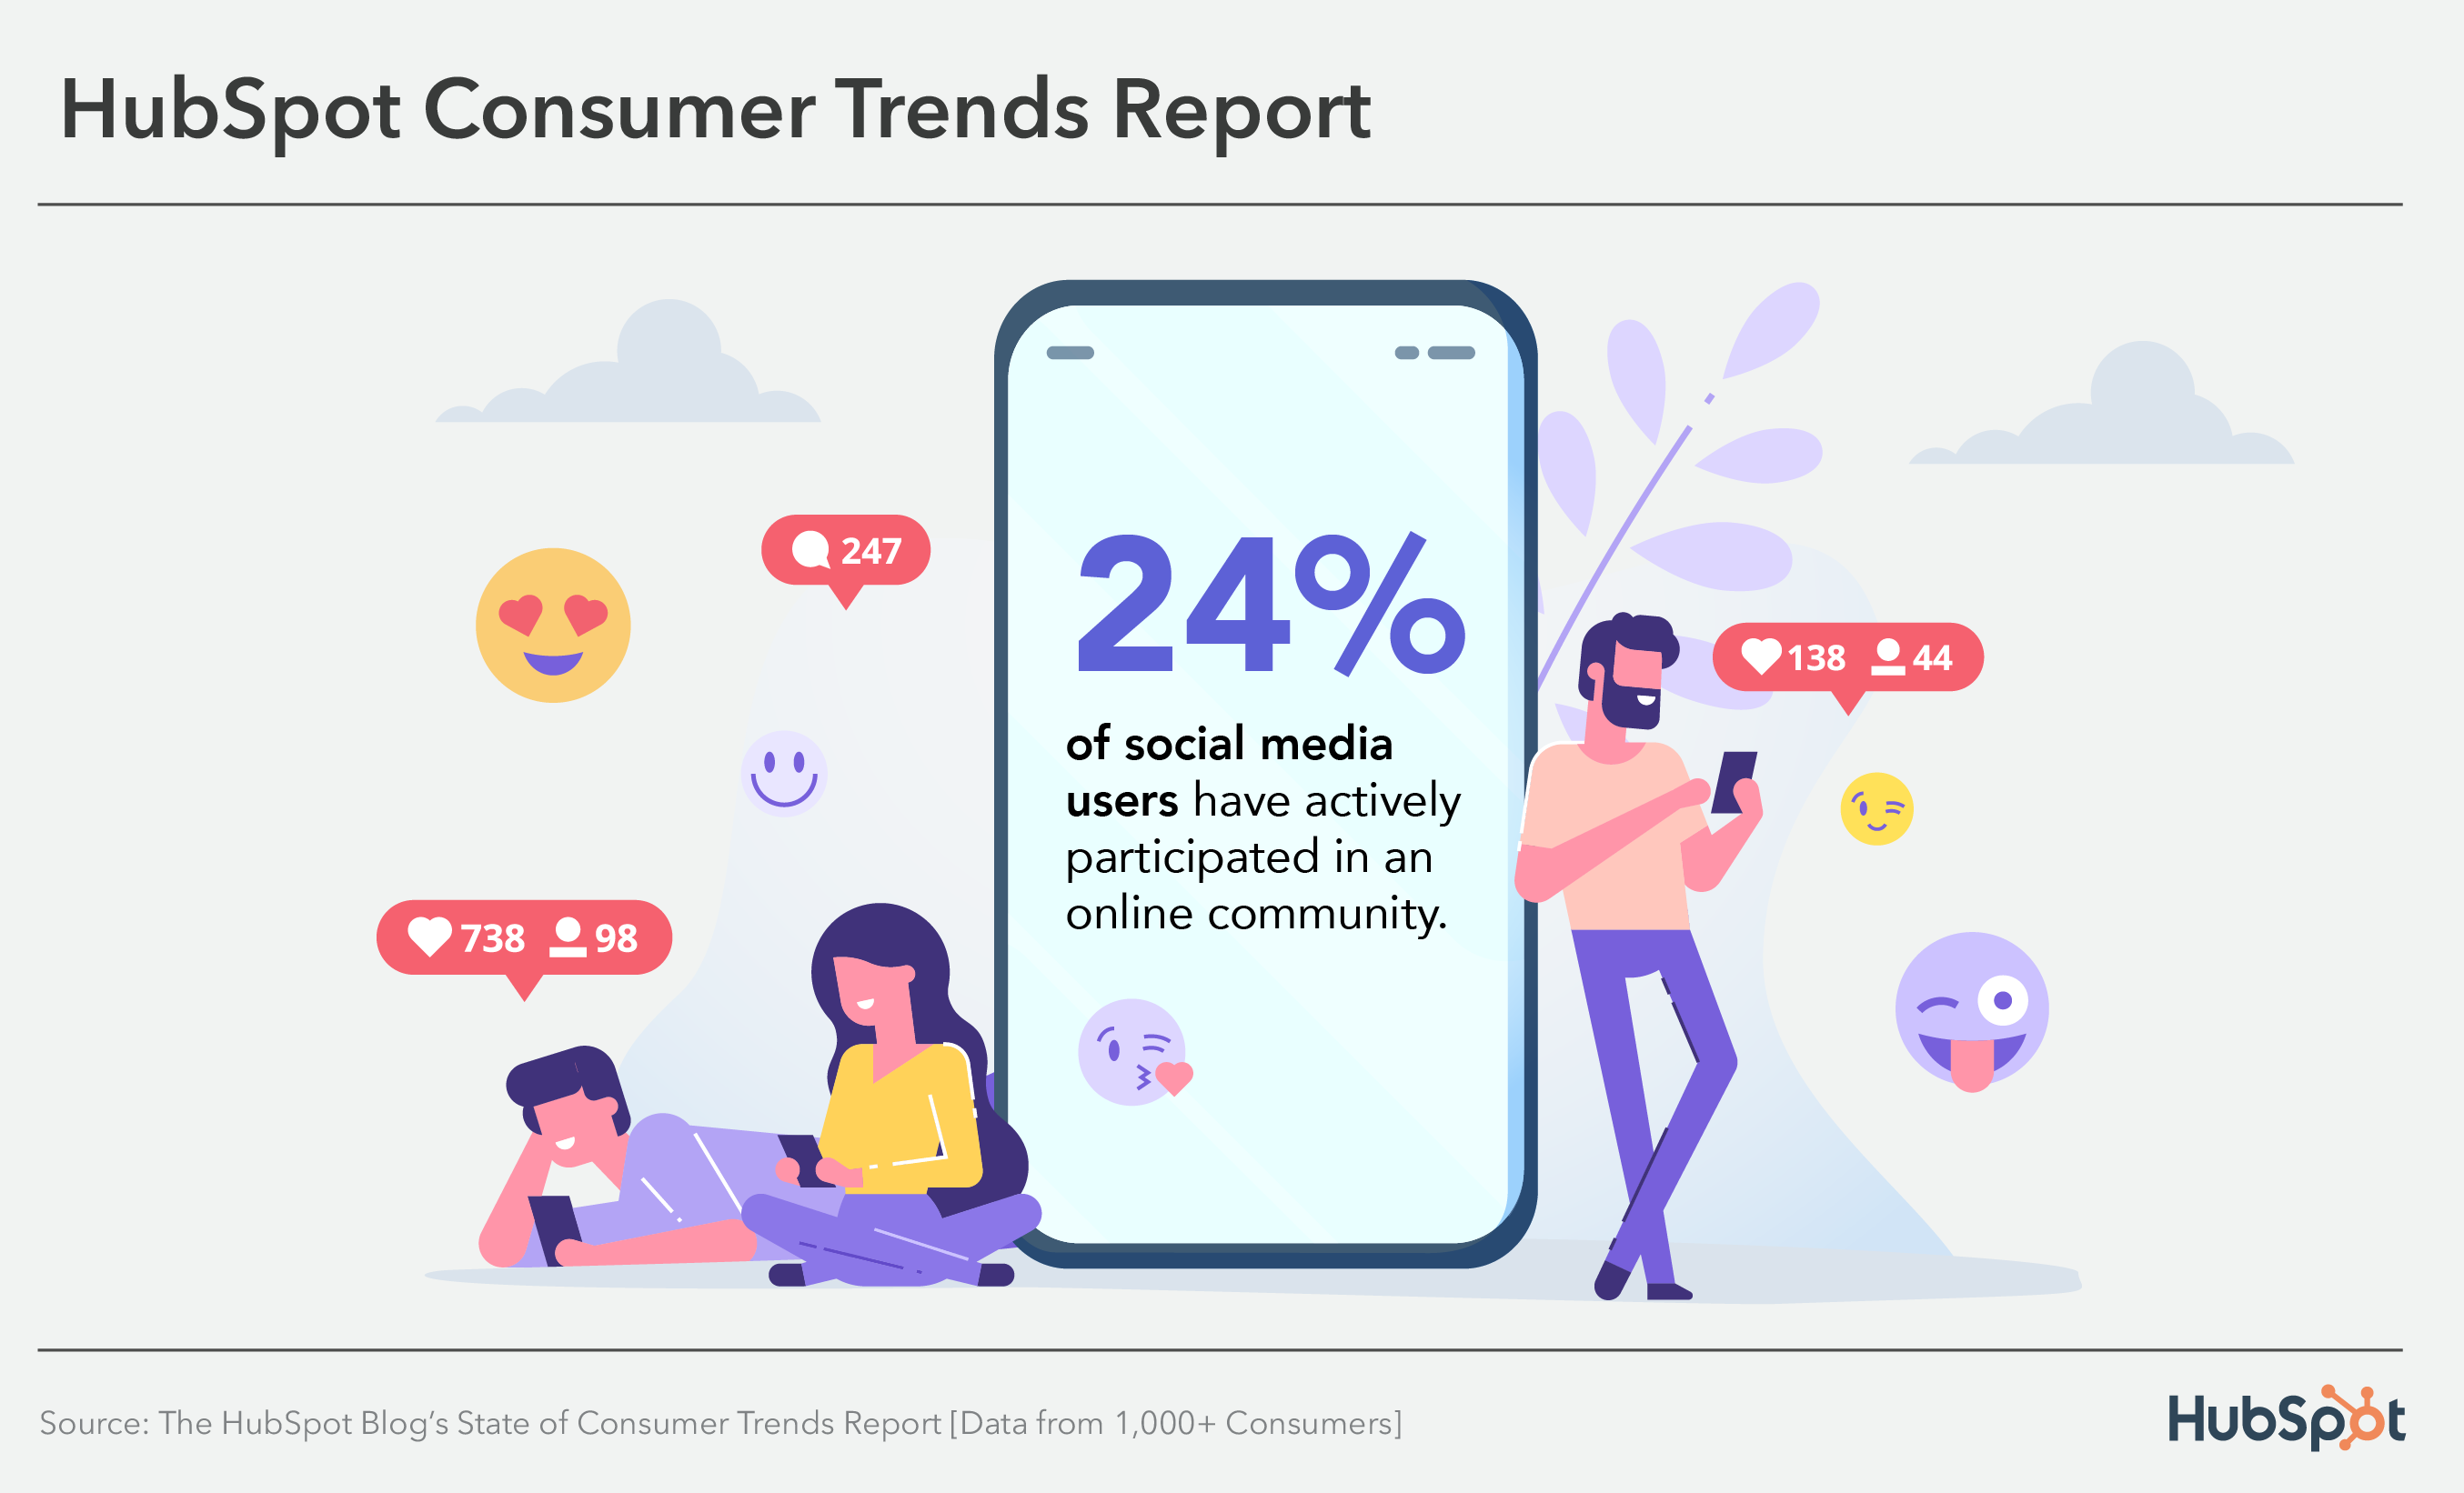 Il 24% dei consumatori ha partecipato attivamente a una comunità online